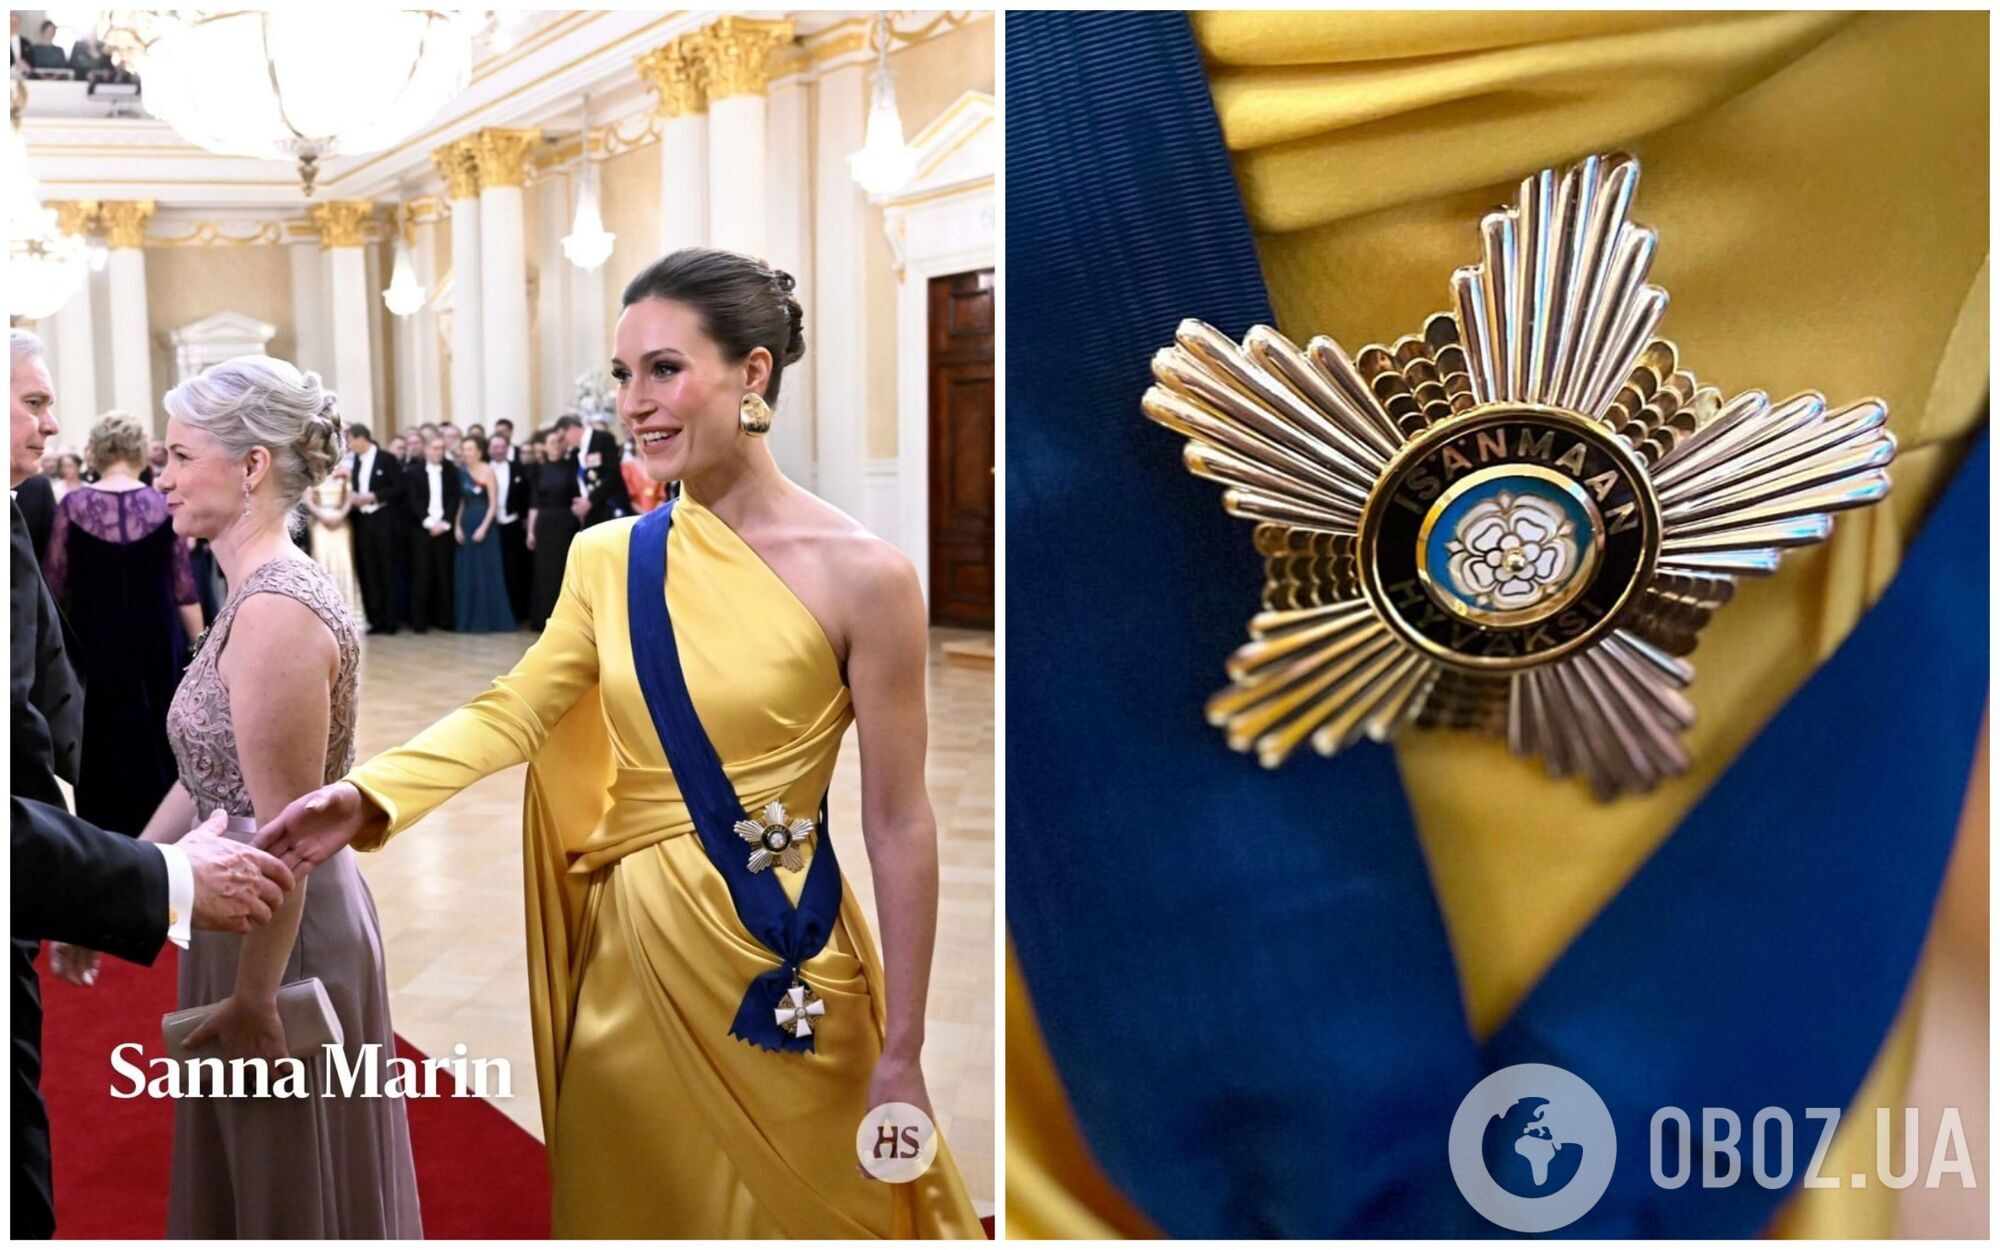 Экс-премьер Финляндии Санна Марин засветилась на публике в сине-желтом платье